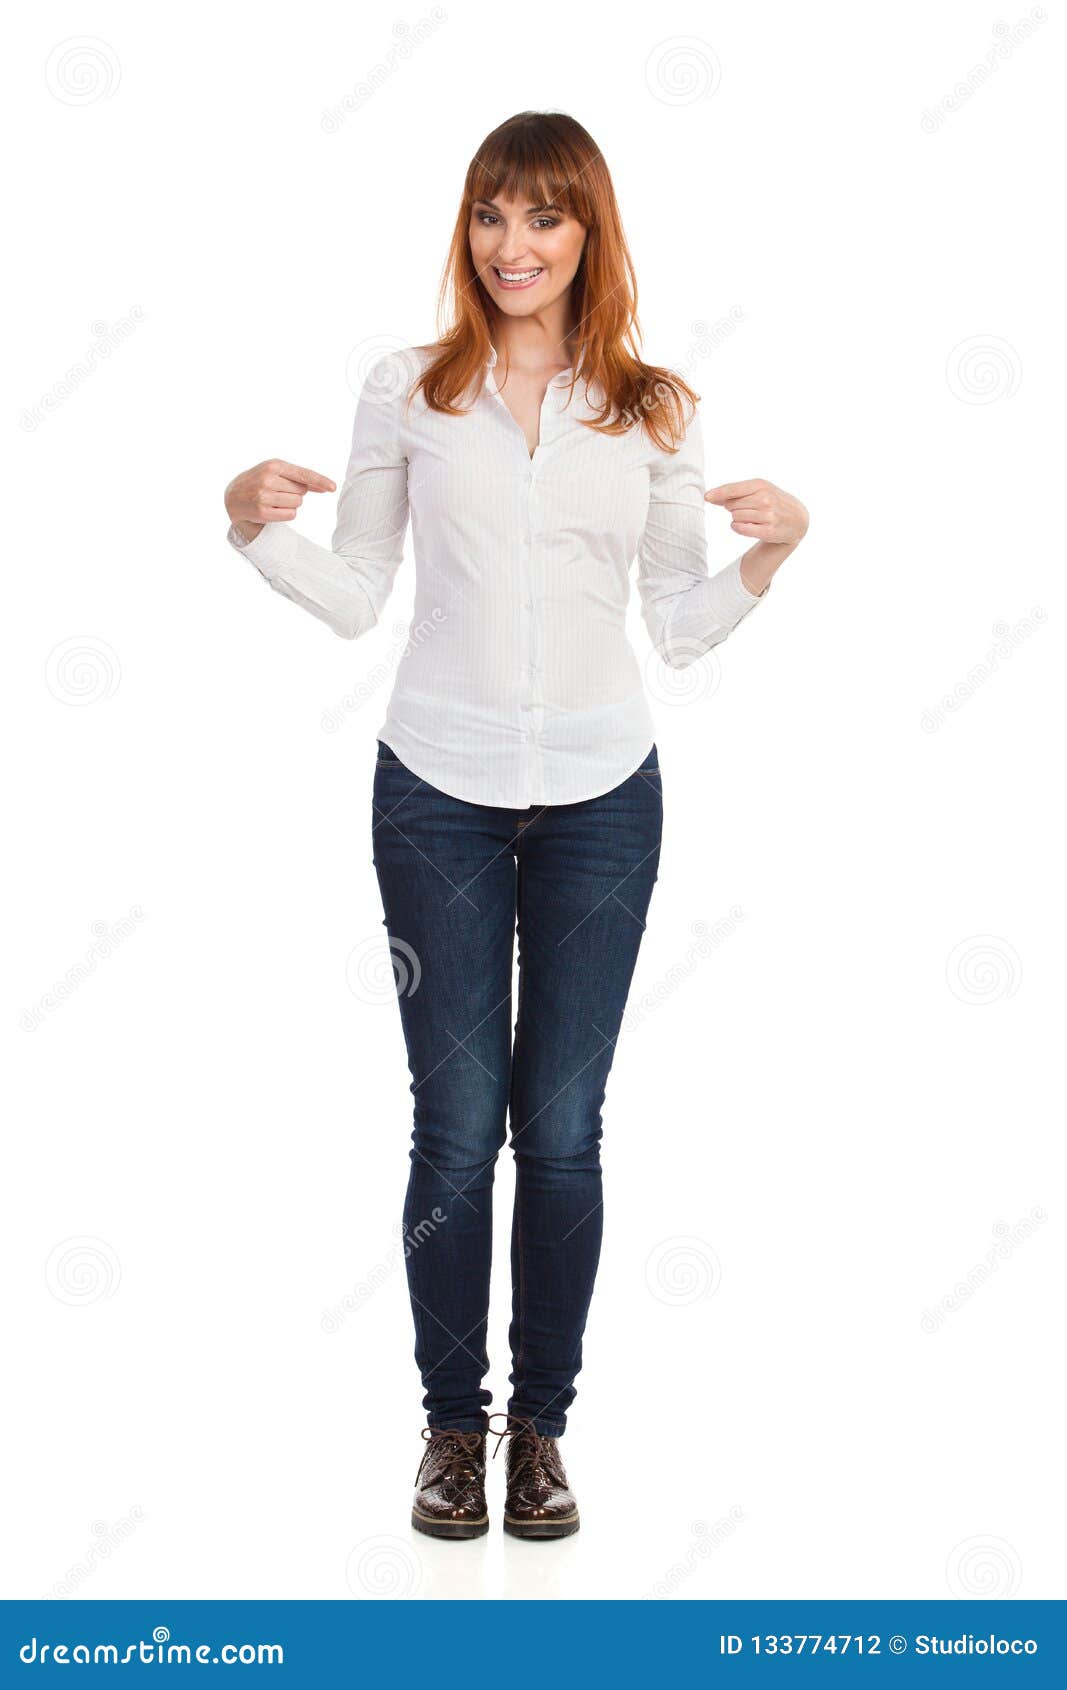 La Mujer Joven En La Camisa Vaqueros Y Los Zapatos De Brown Está Señalando En Sí Misma Y La Sonrisa de archivo - Imagen de blanco, 133774712